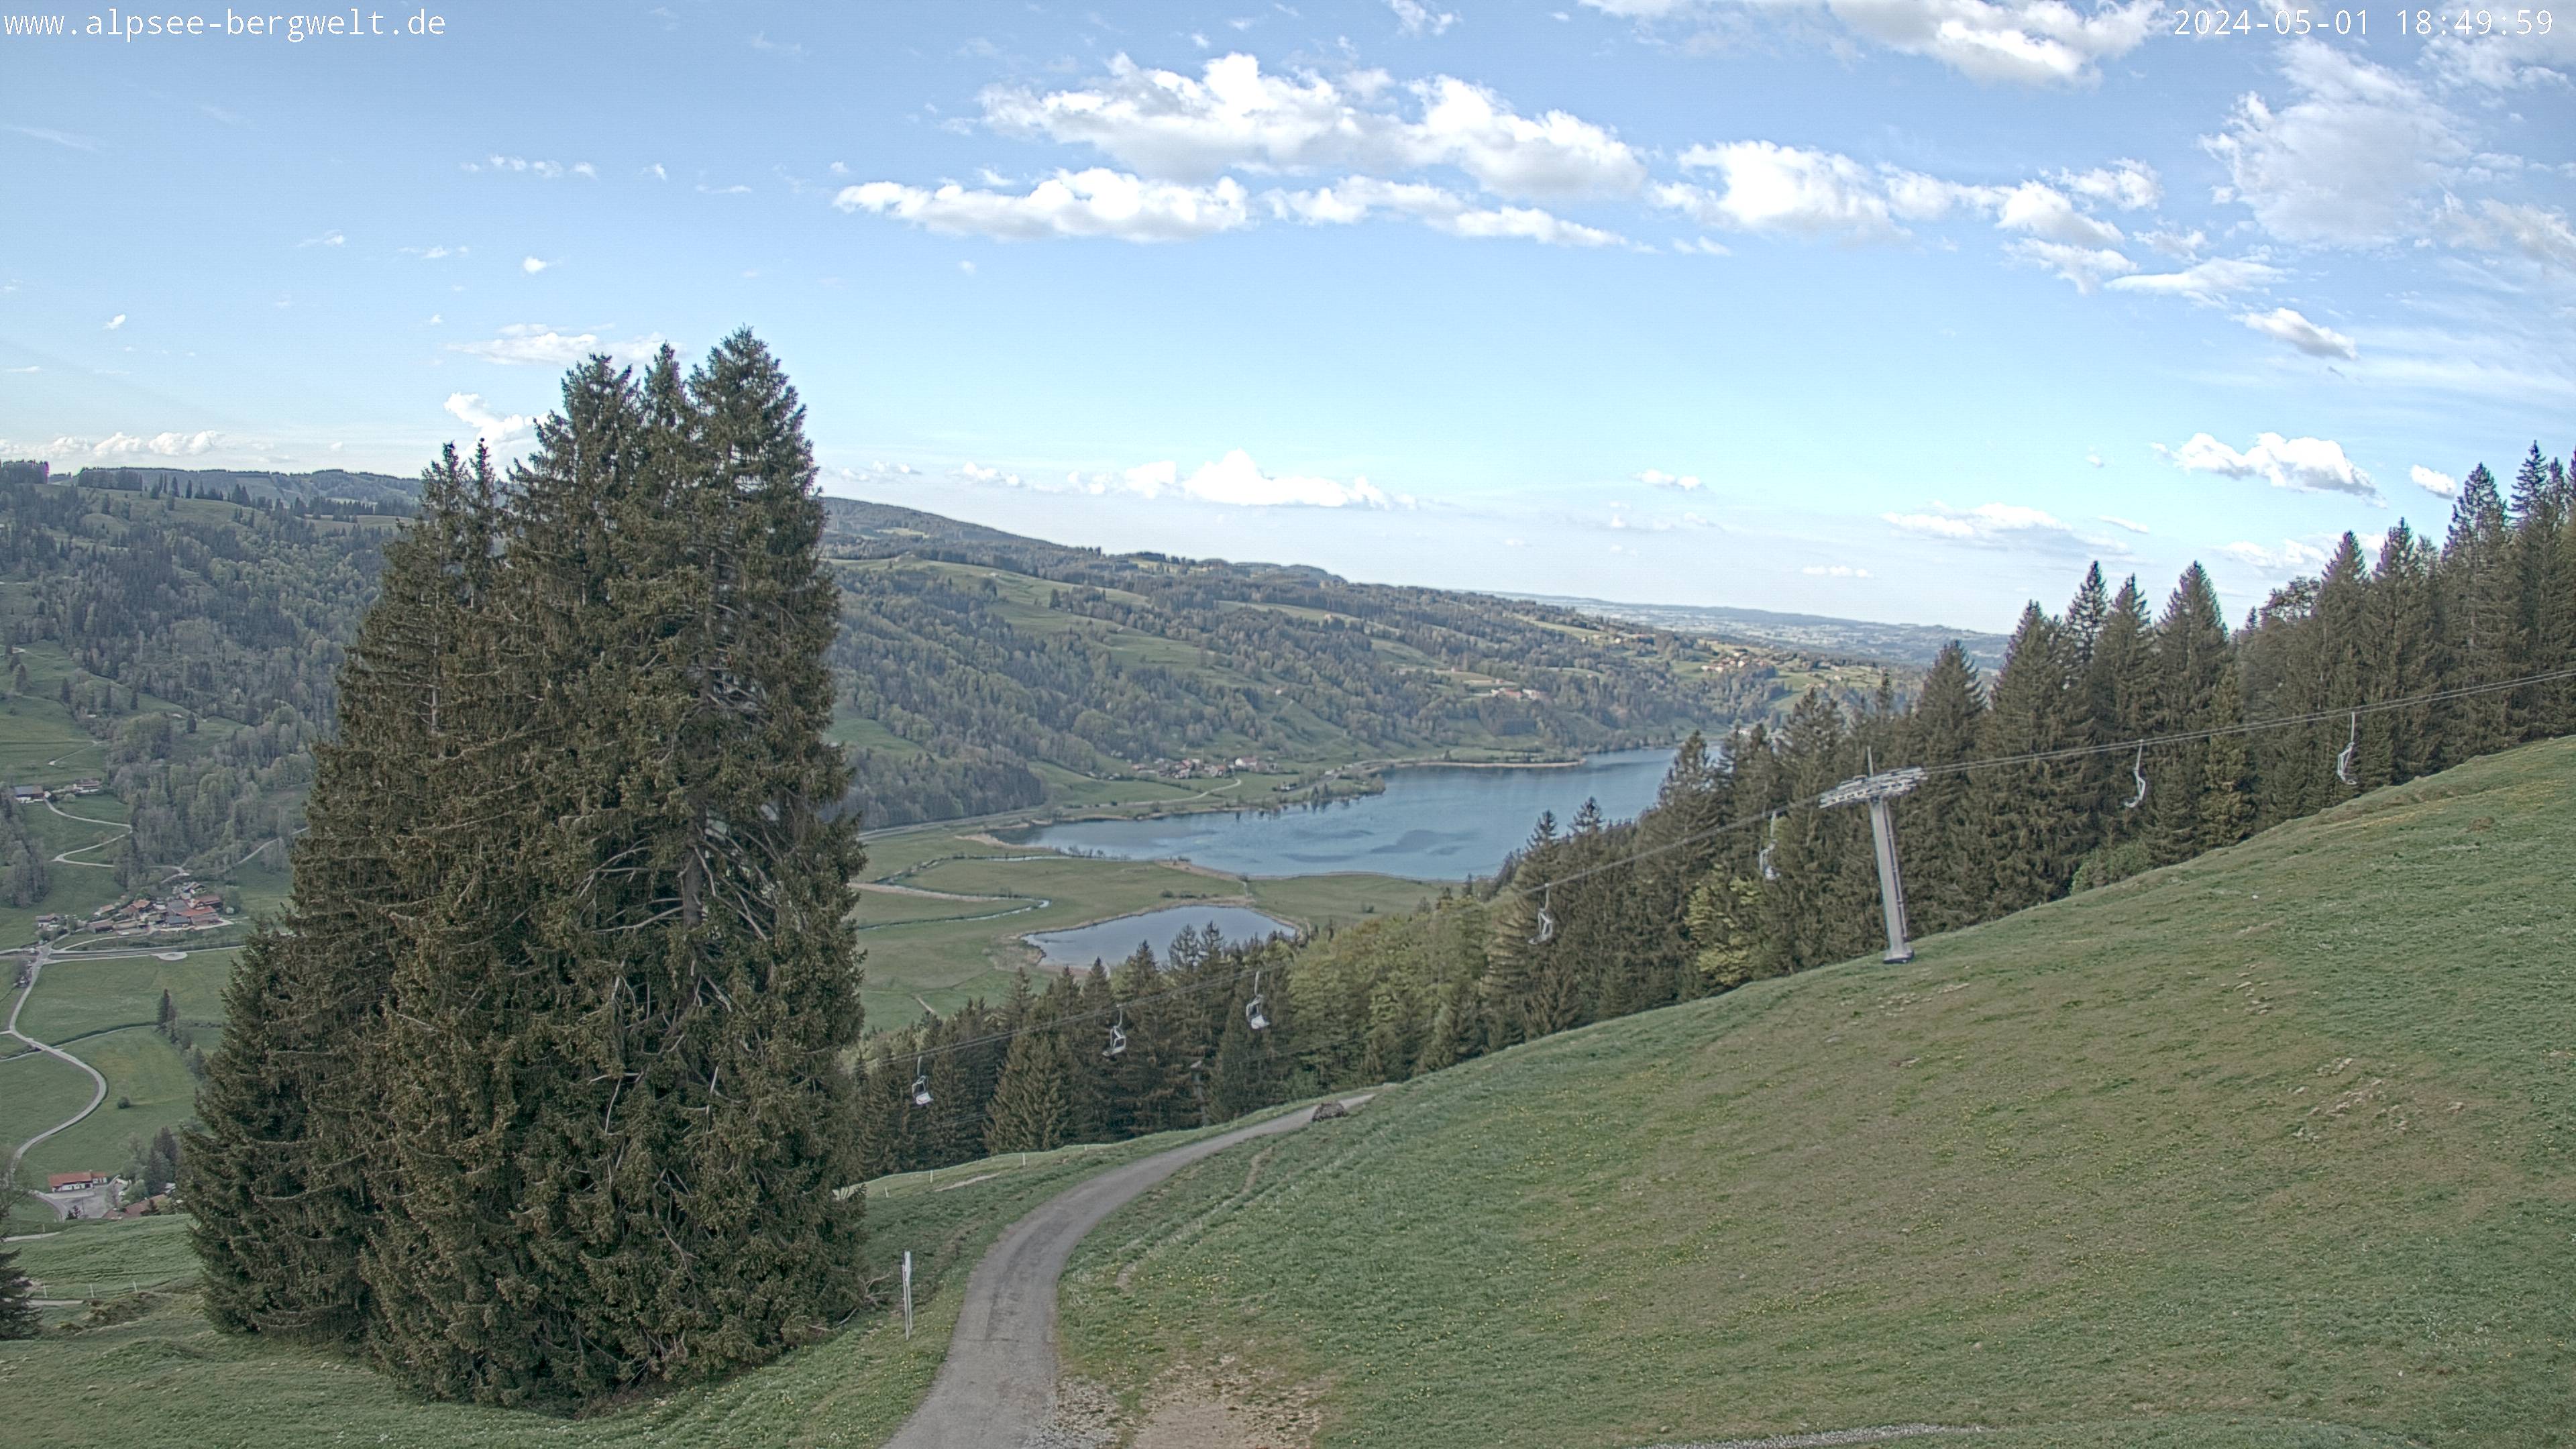 Webcam an der Alpsee Bergwelt bei Immenstadt mit Blick vom Berg über den großen Alpsee Richtung Nordosten.